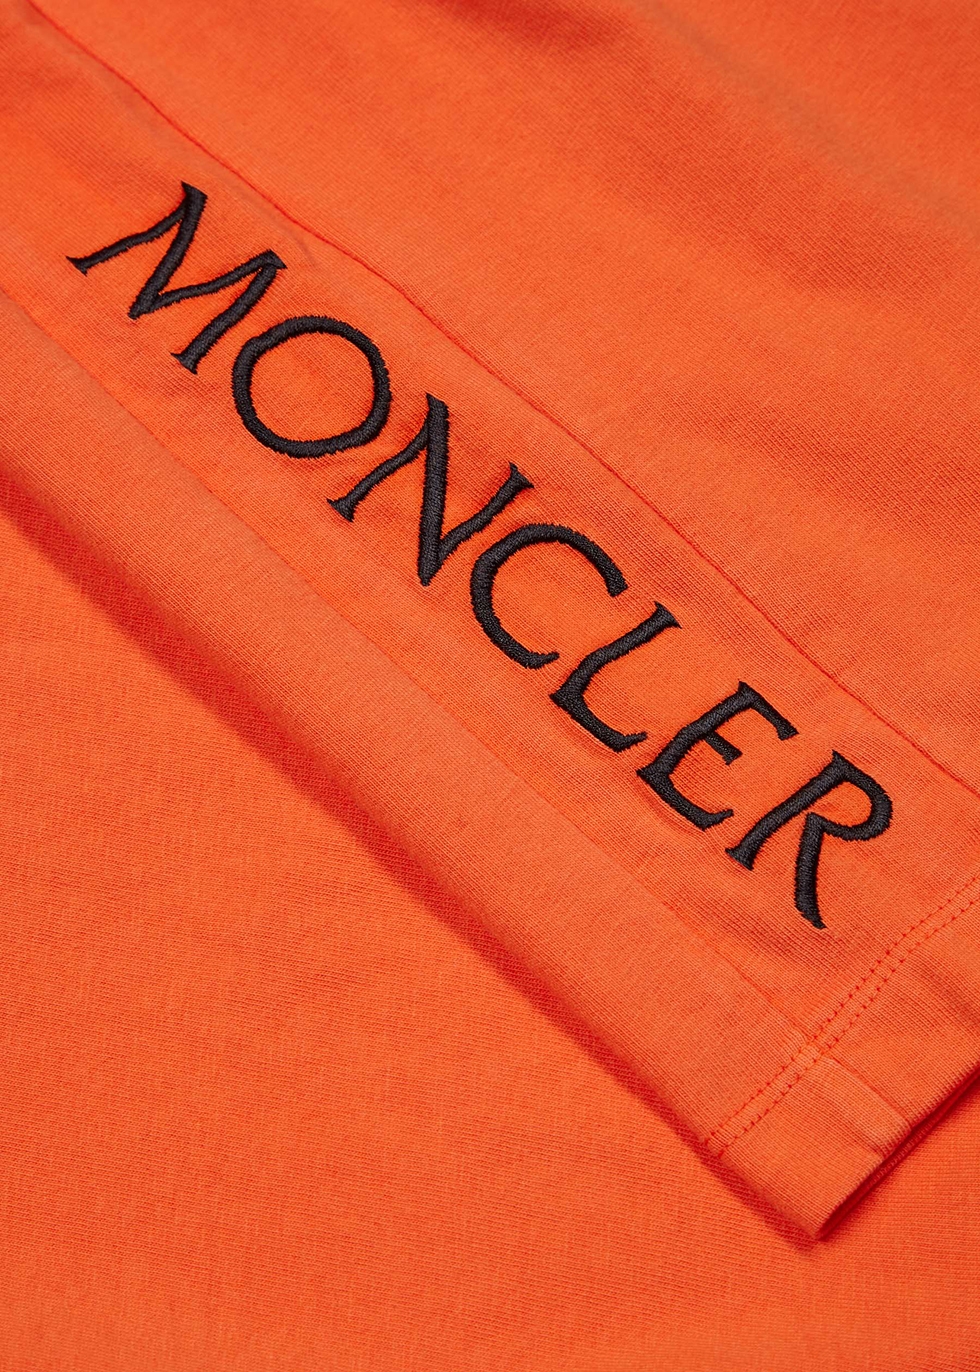 orange moncler shirt